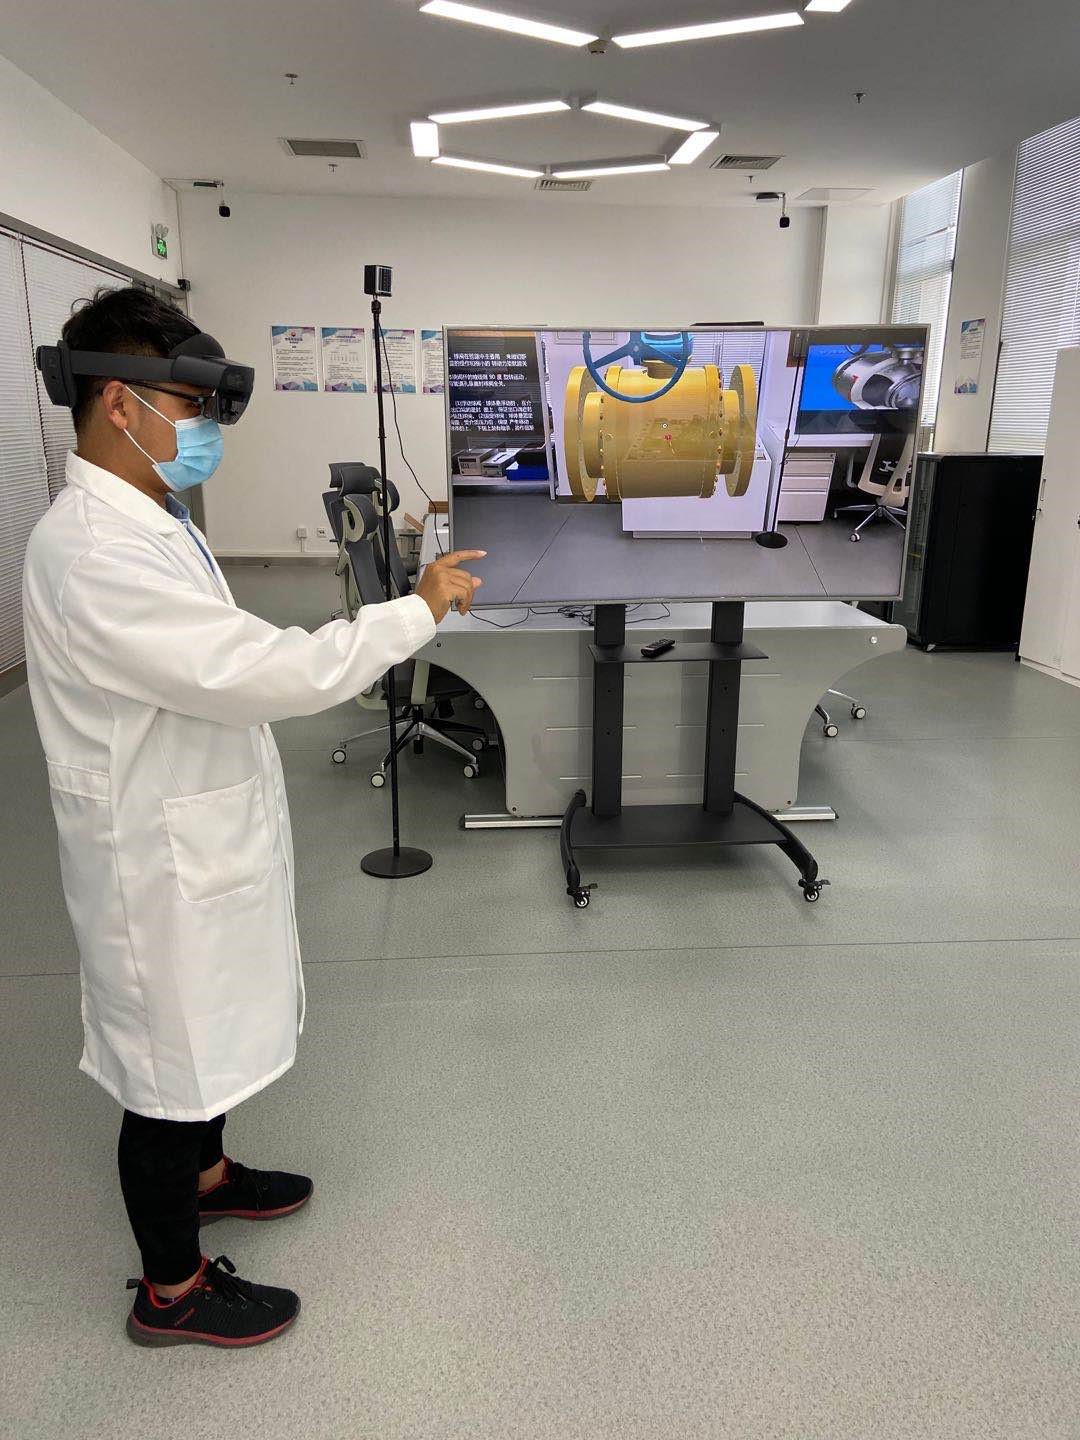 中油瑞飞通过 HoloLens 对员工进行技能培训，实现自然的人机交互